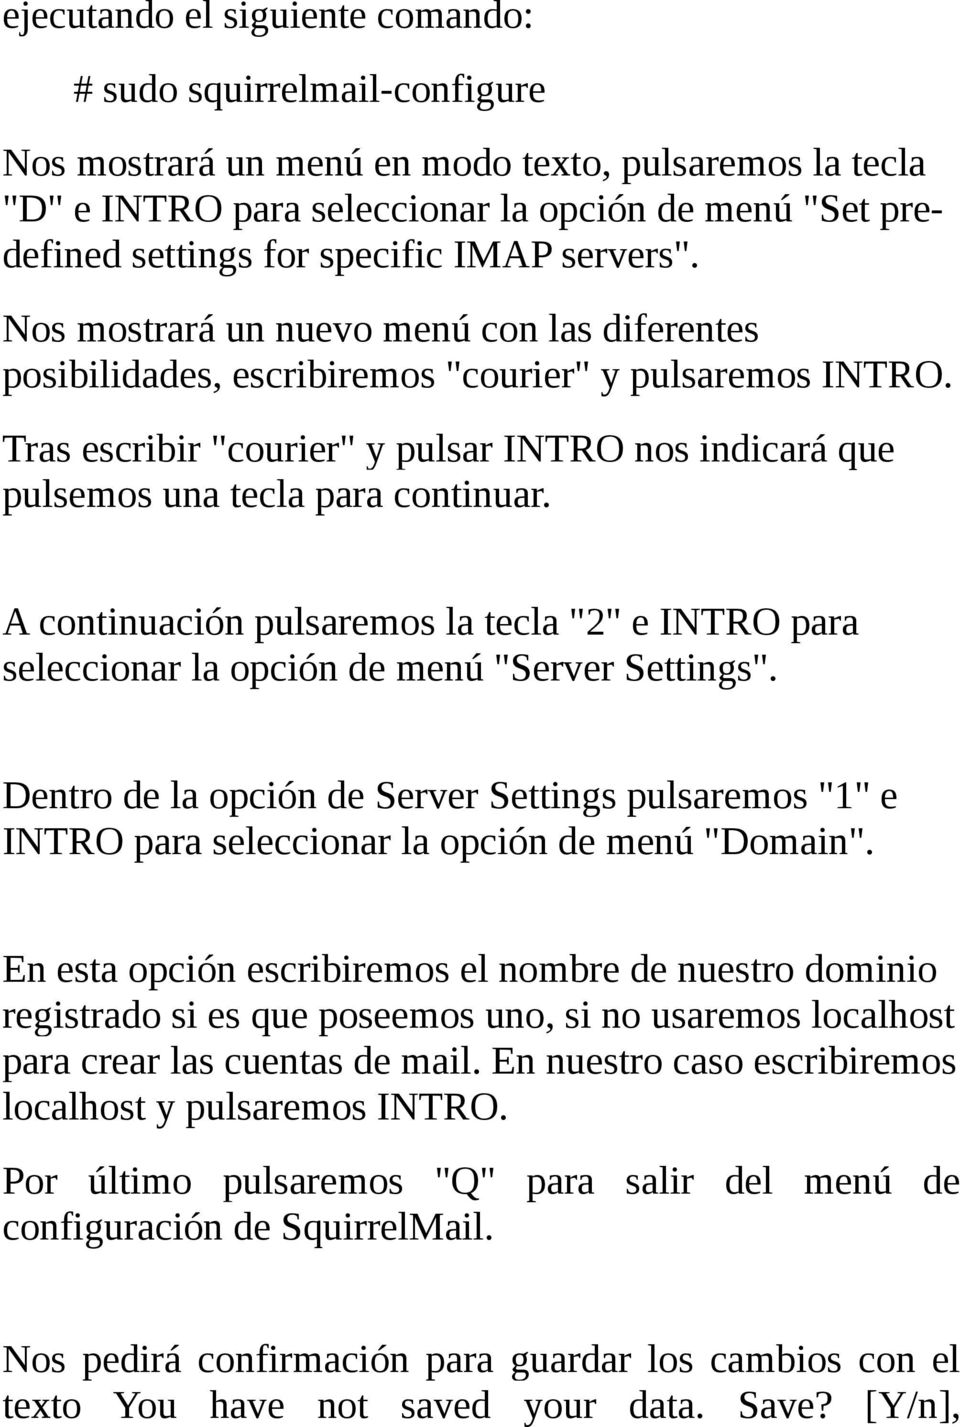 Tras escribir "courier" y pulsar INTRO nos indicará que pulsemos una tecla para continuar. A continuación pulsaremos la tecla "2" e INTRO para seleccionar la opción de menú "Server Settings".